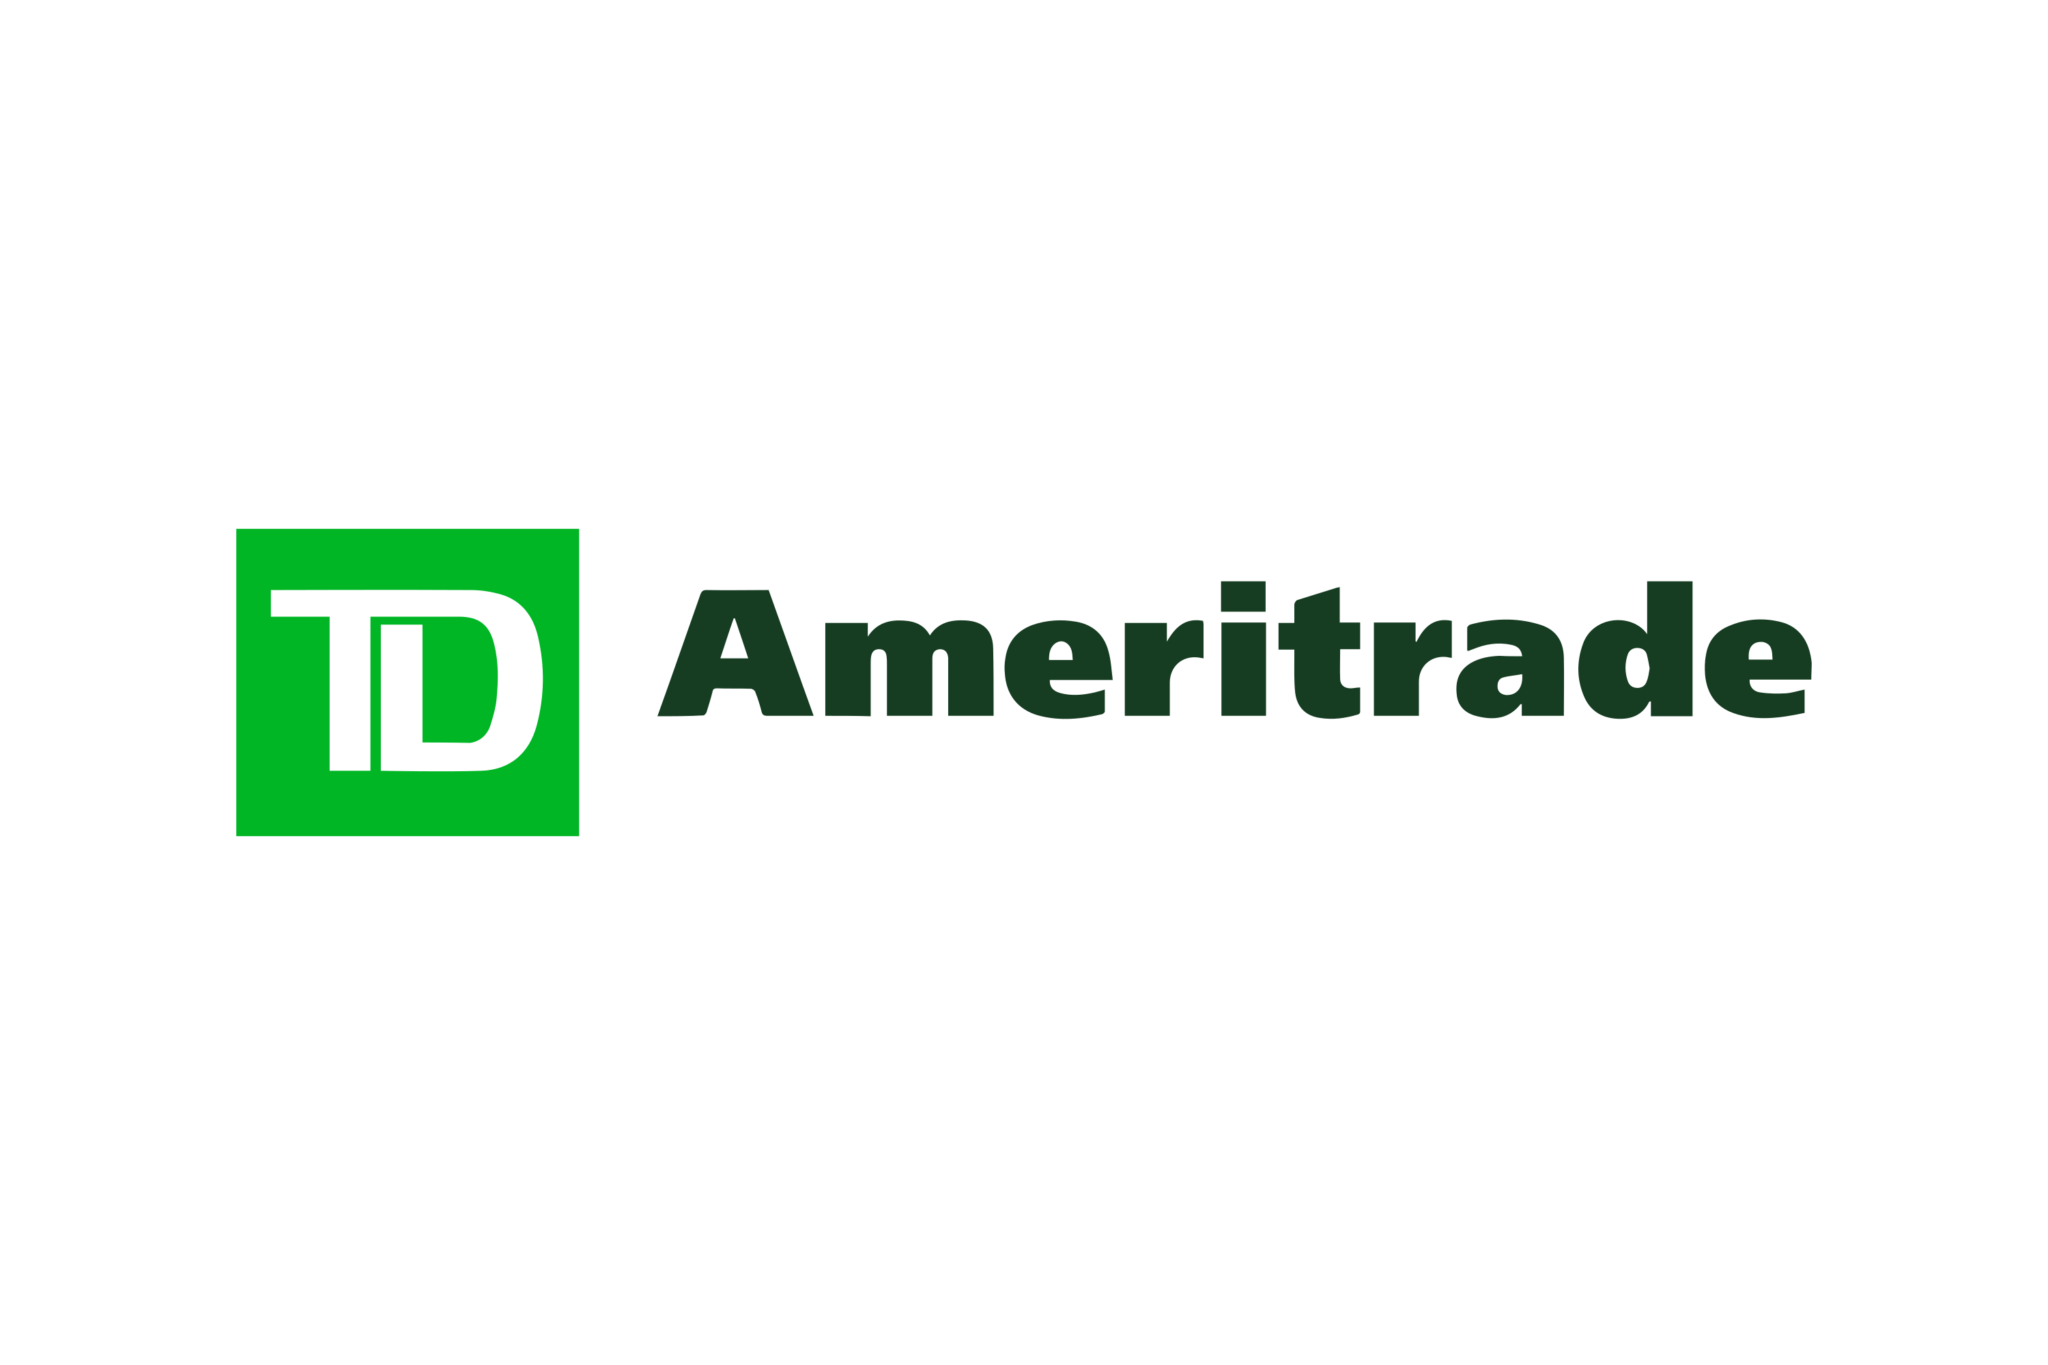 TD_Ameritrade_Logo_DB1gQkC_k8CPcfb